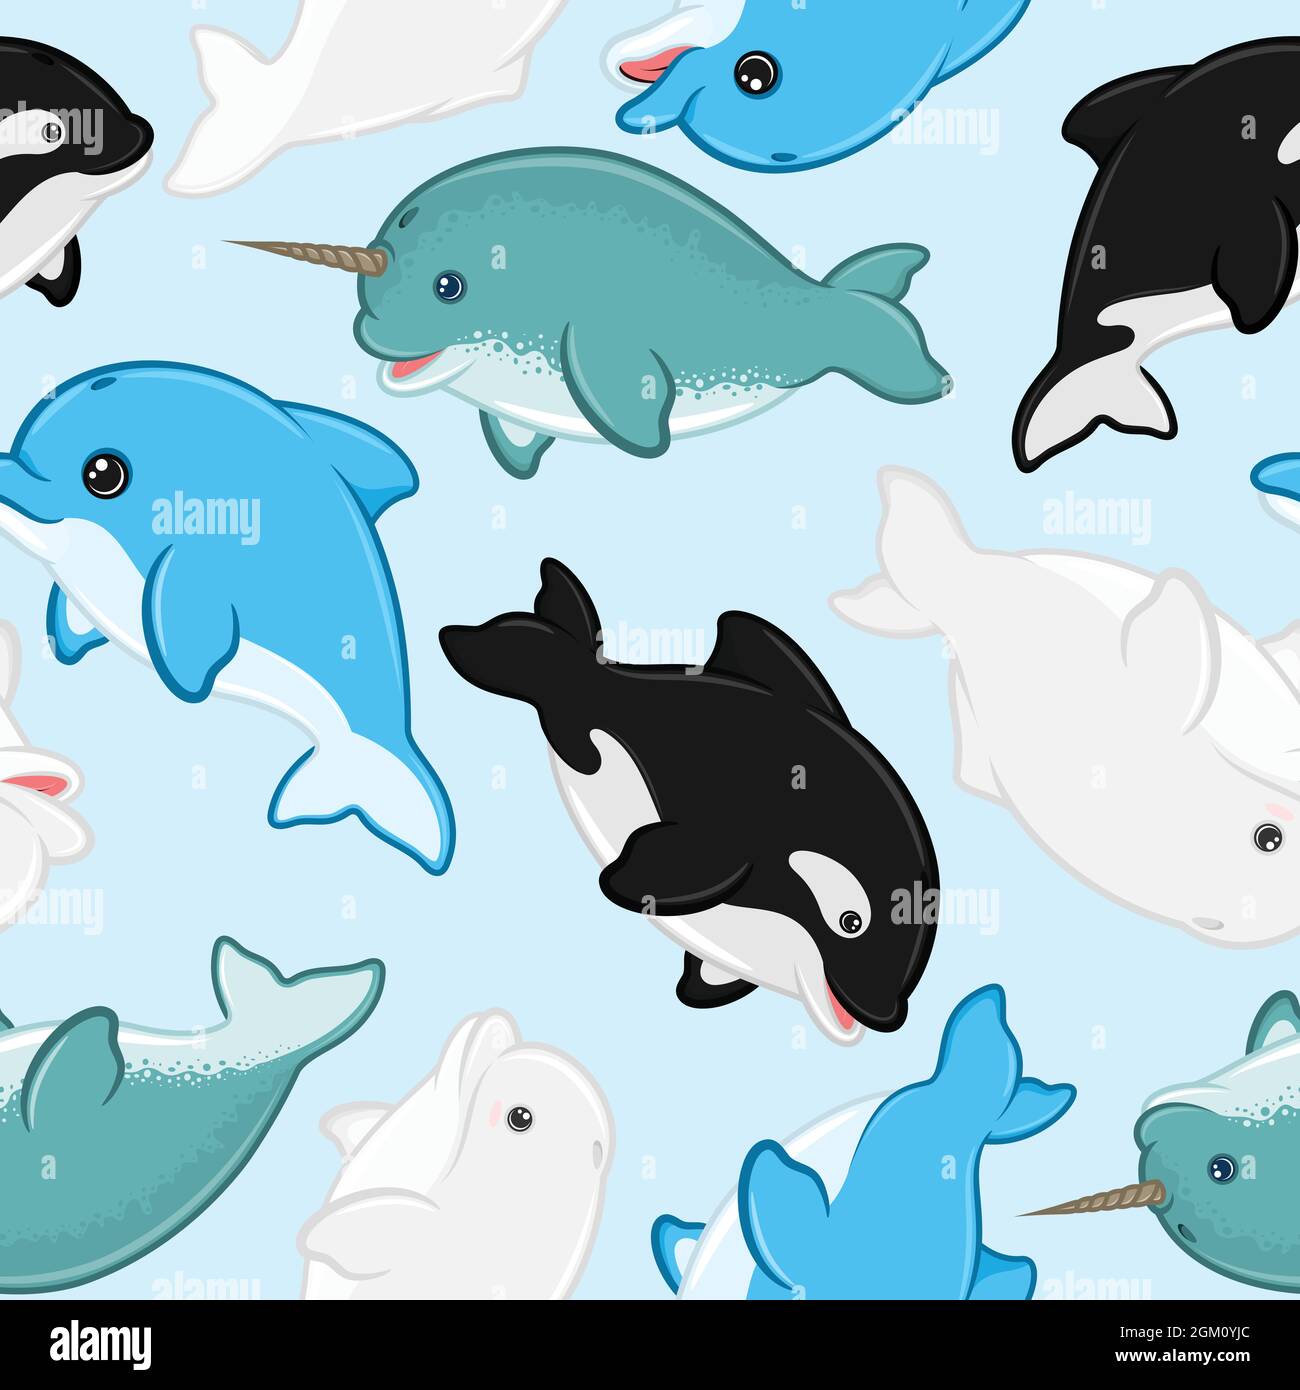 Schema mammifero acquatico con forma di cartone animato infantile, beluga, delfino, balena killer, narcale Illustrazione Vettoriale